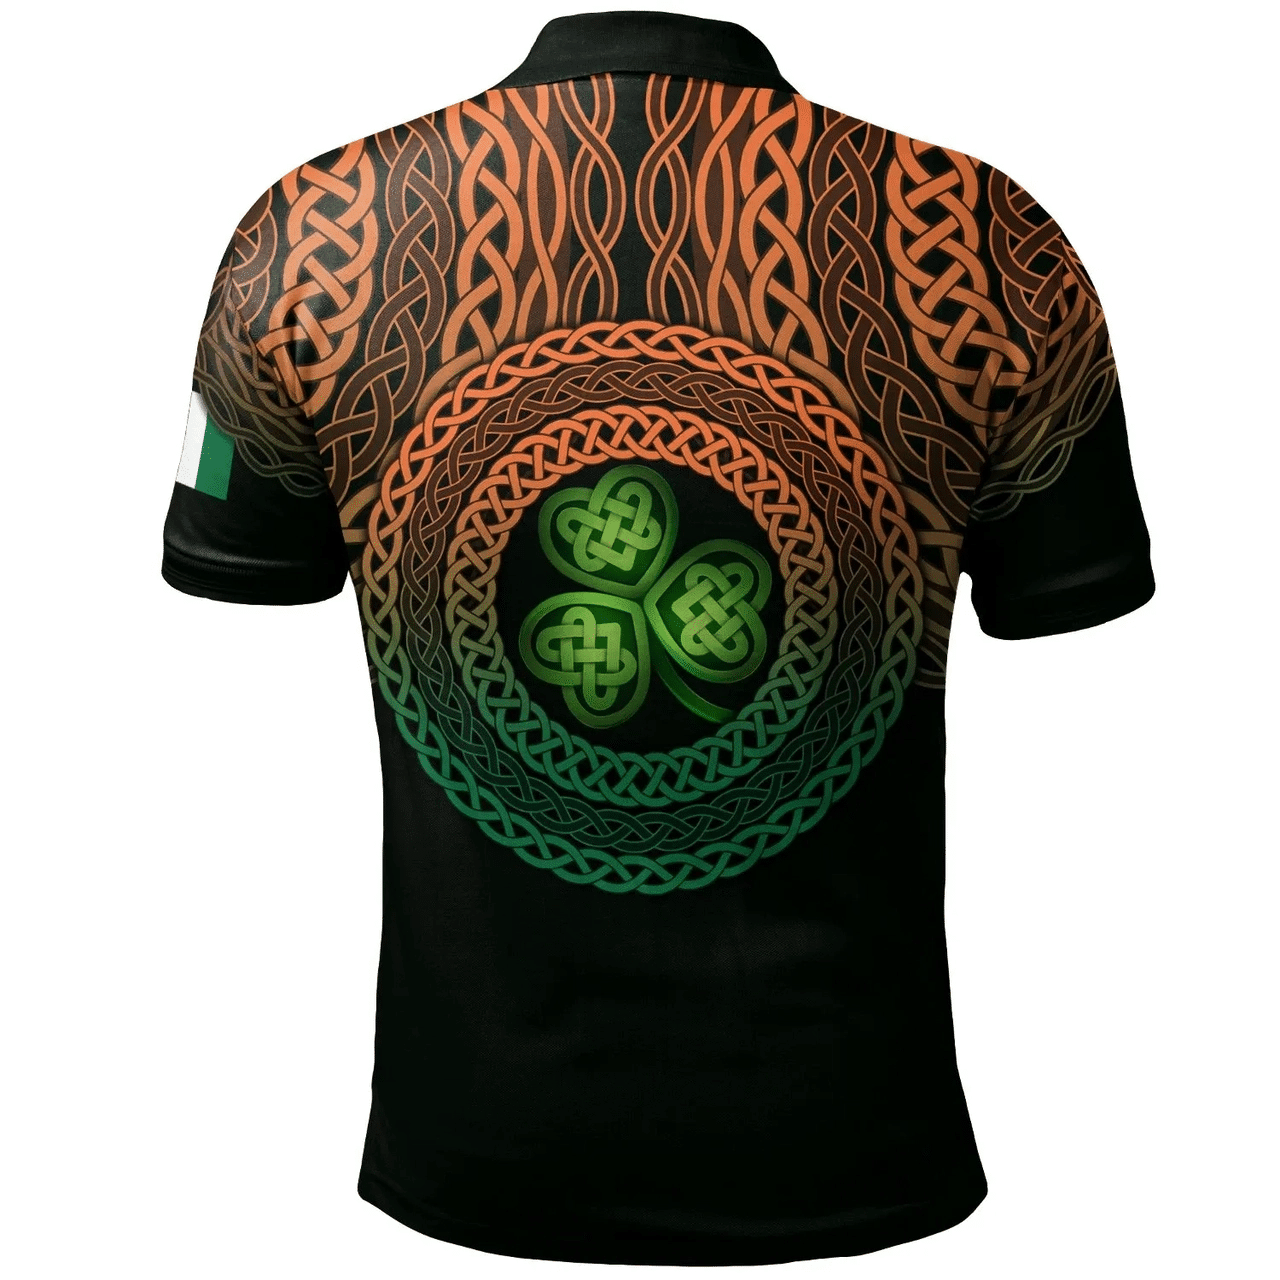 1stIreland Ireland Polo Shirt - House of MACMANUS Irish Family Crest Polo Shirt - Celtic Pride A7 | 1stIreland.com